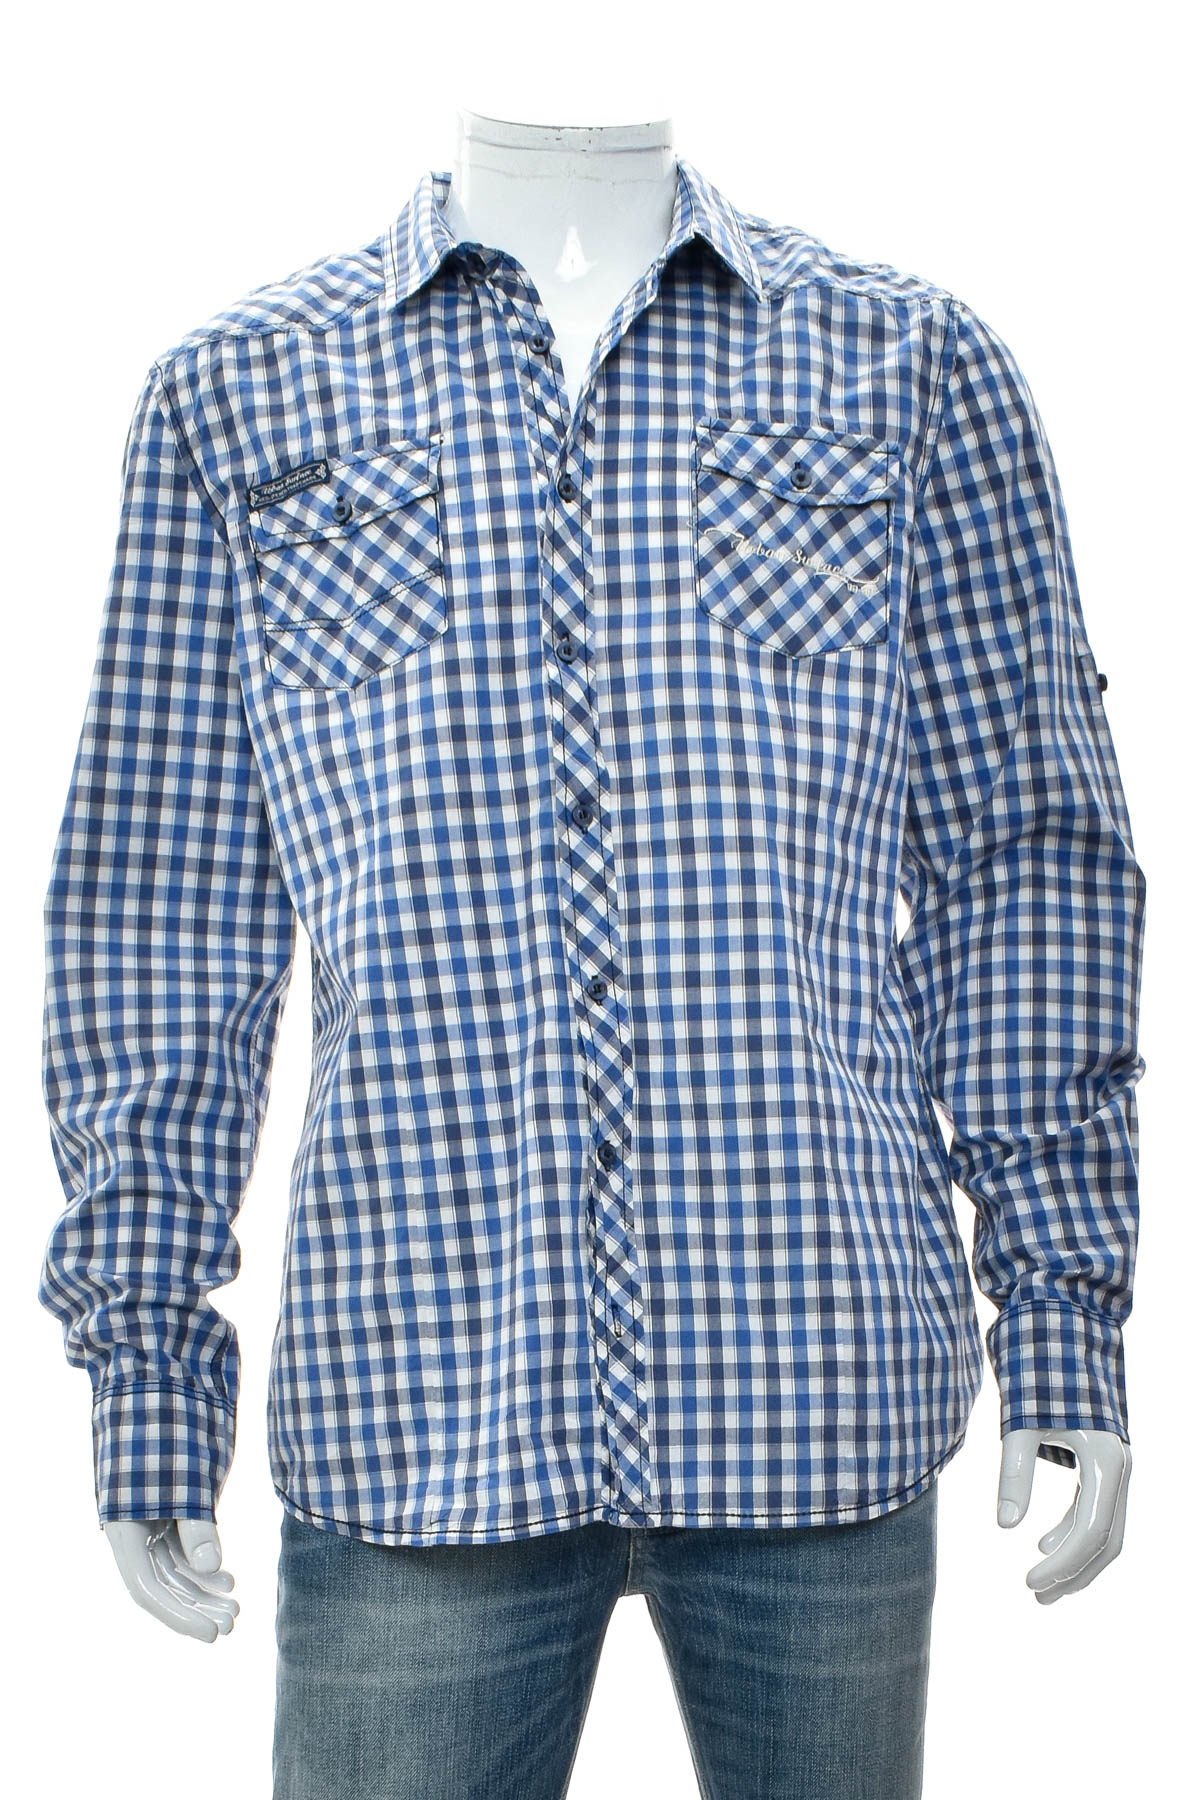 Ανδρικό πουκάμισο - 98-86 - 0